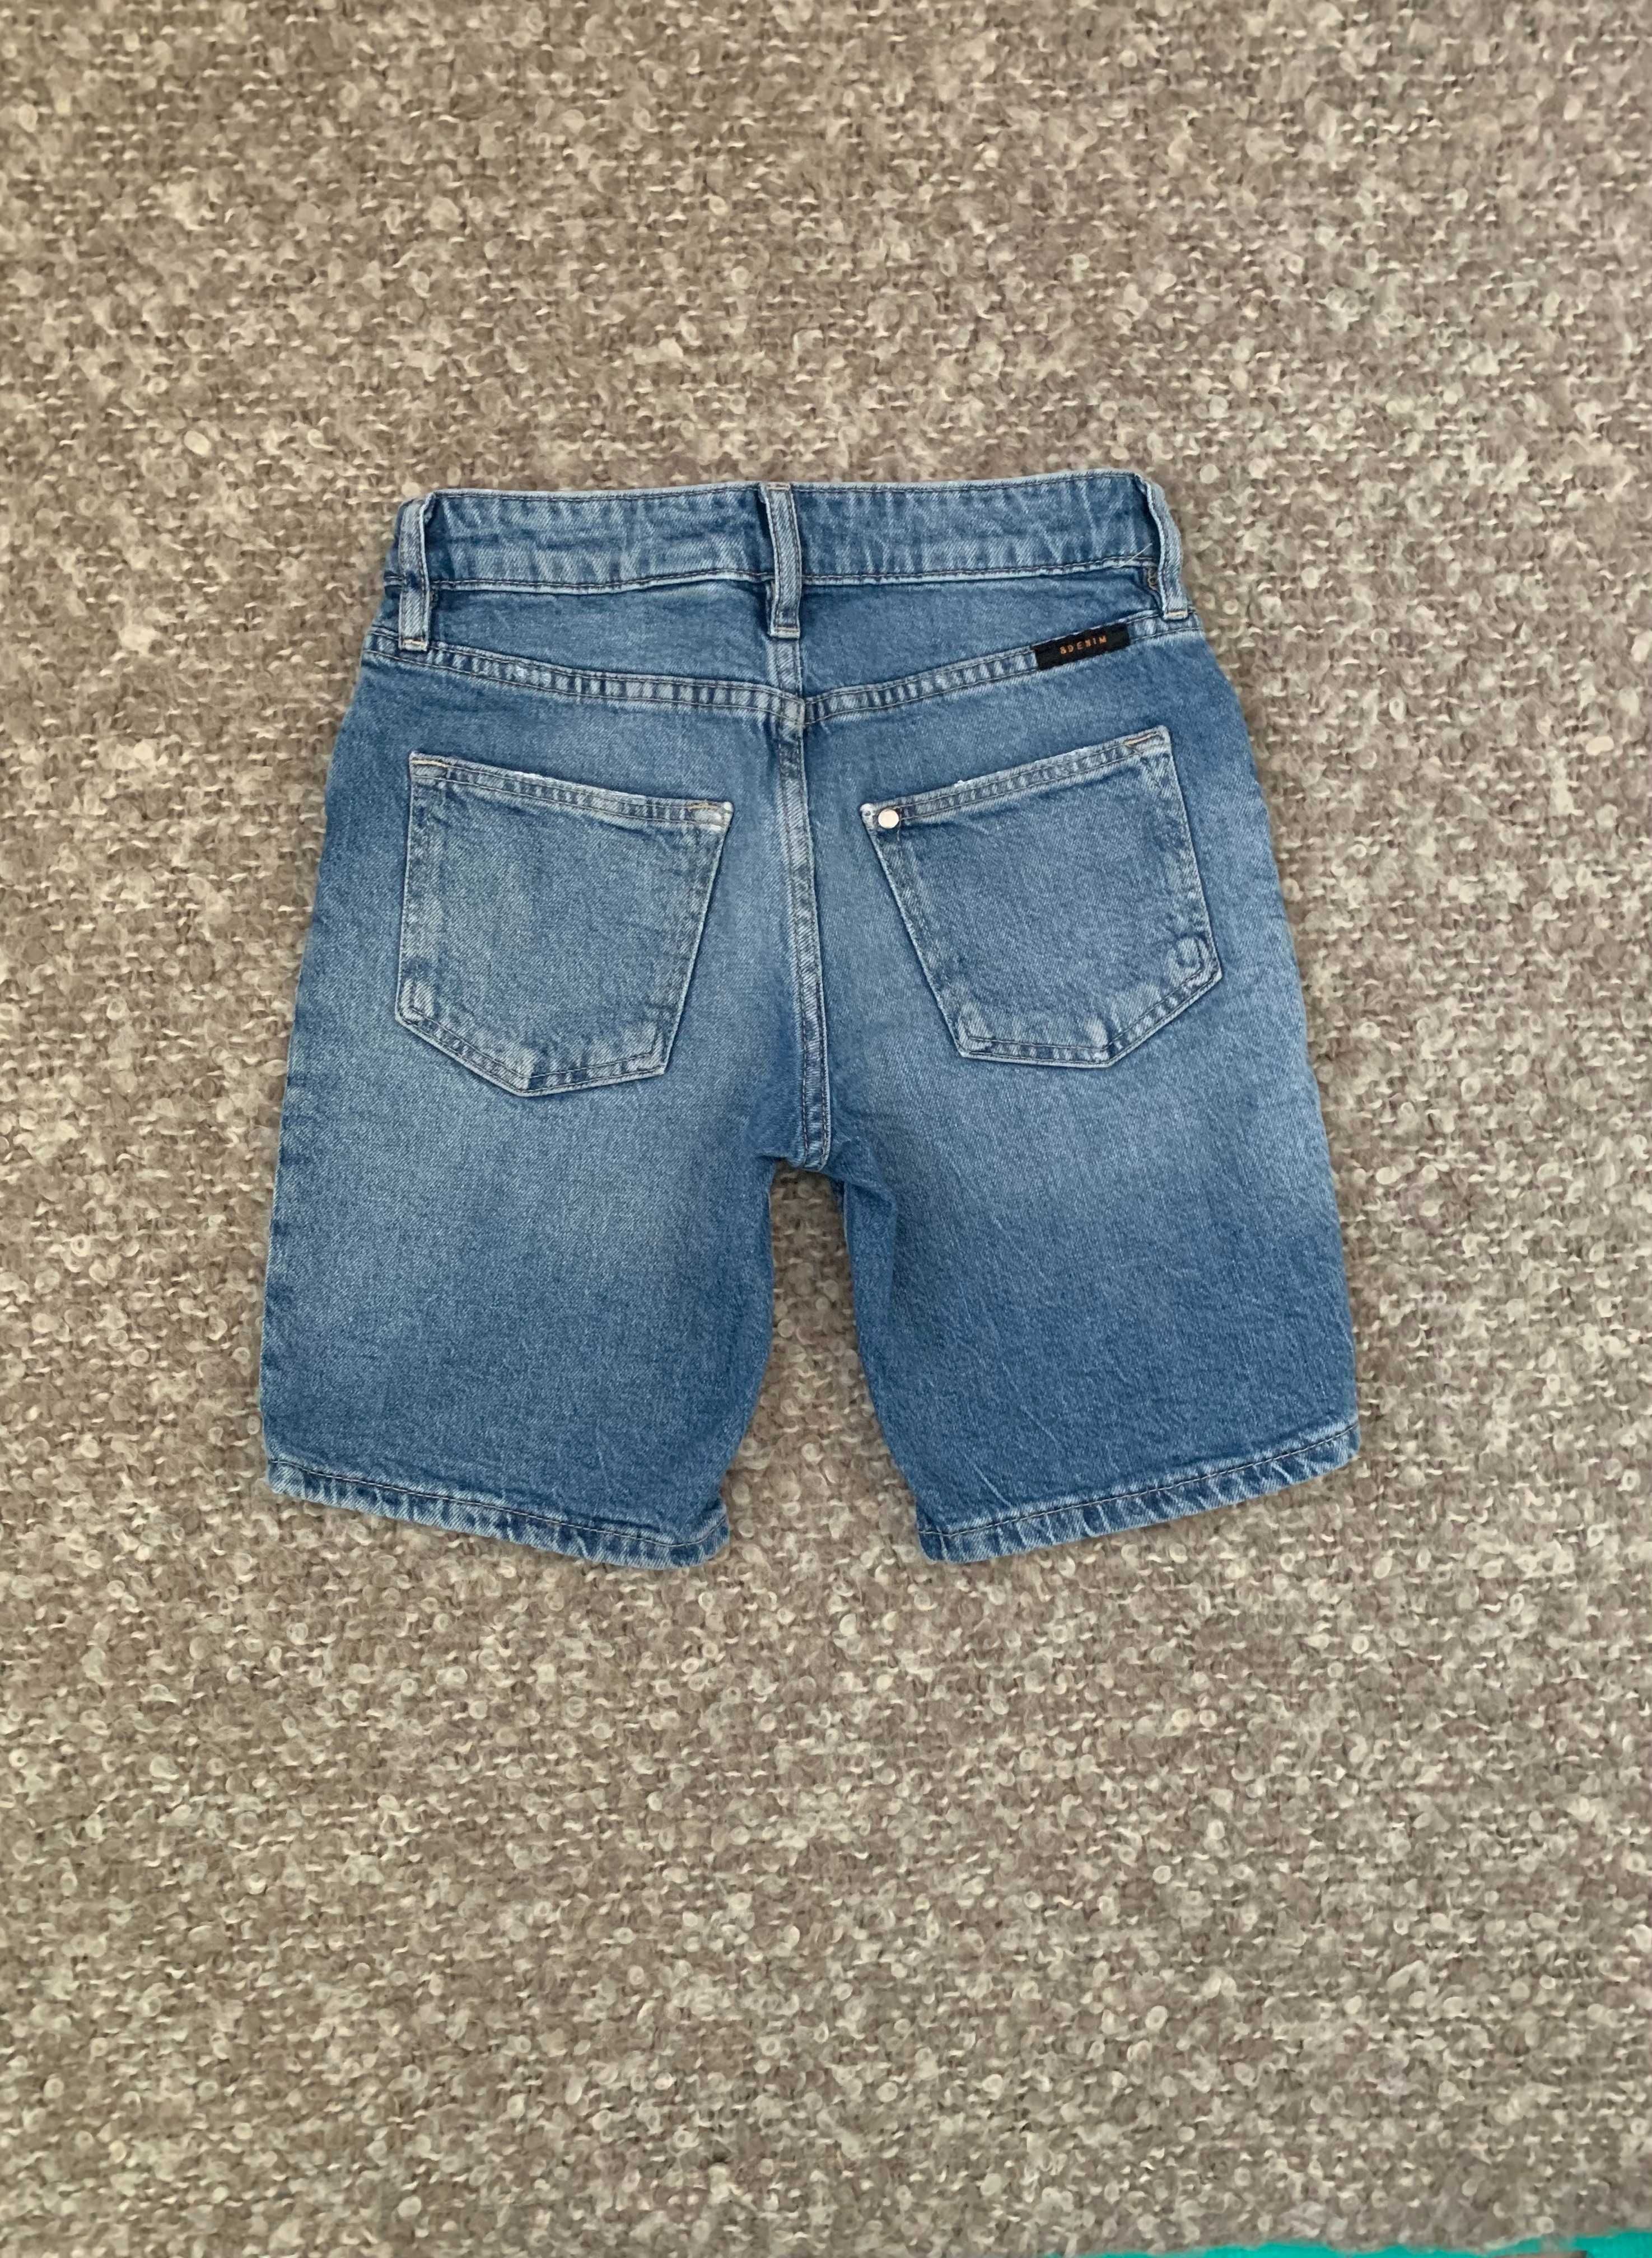 Сет от къси панталони за момче от H&M - размер 122/128 см